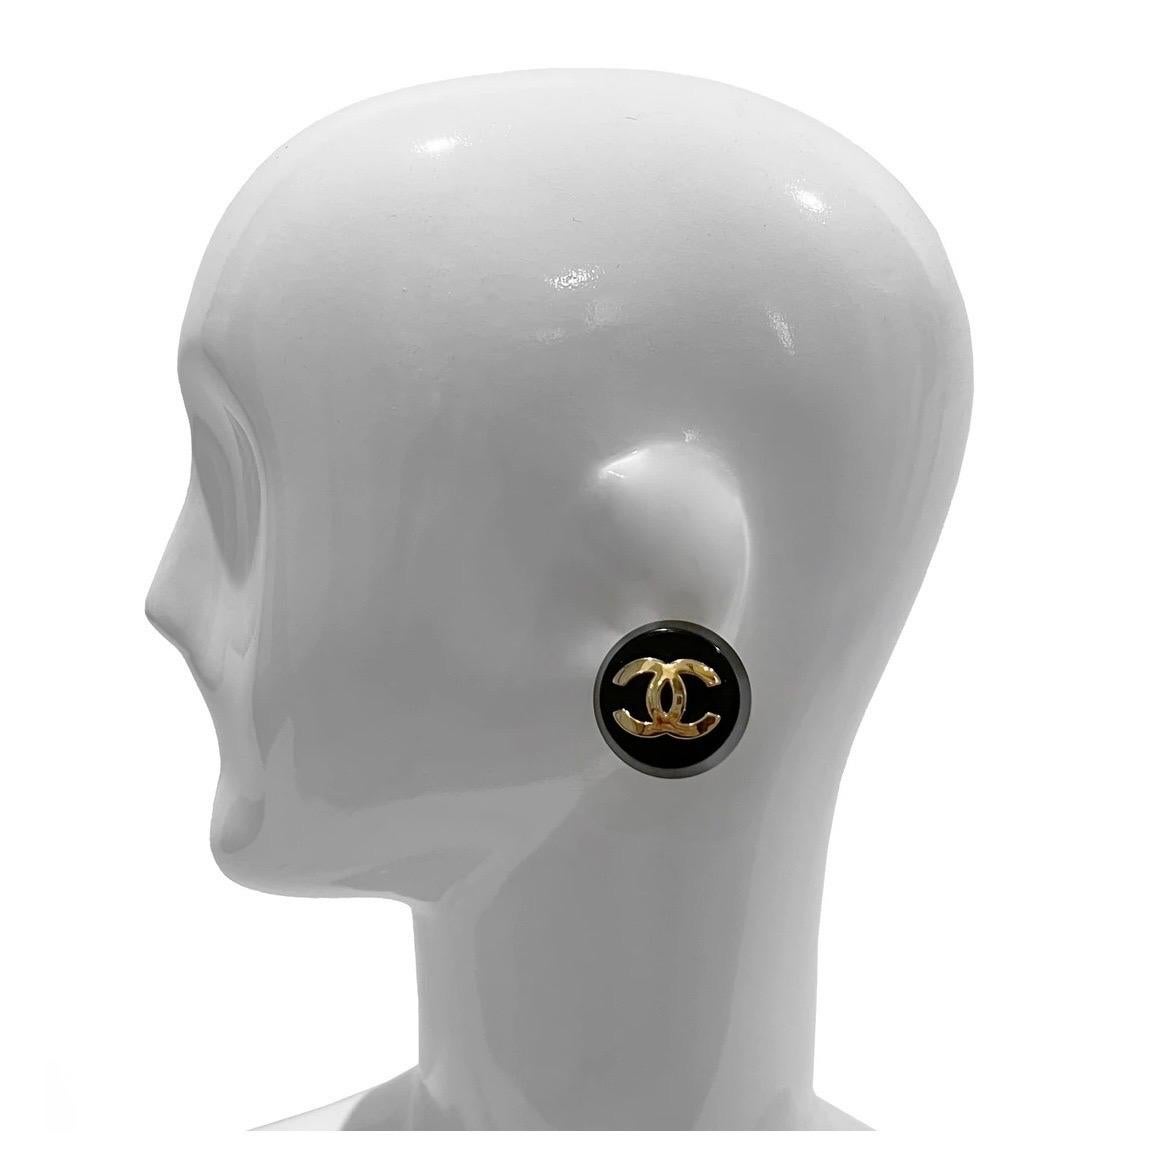 chanel clip on earrings